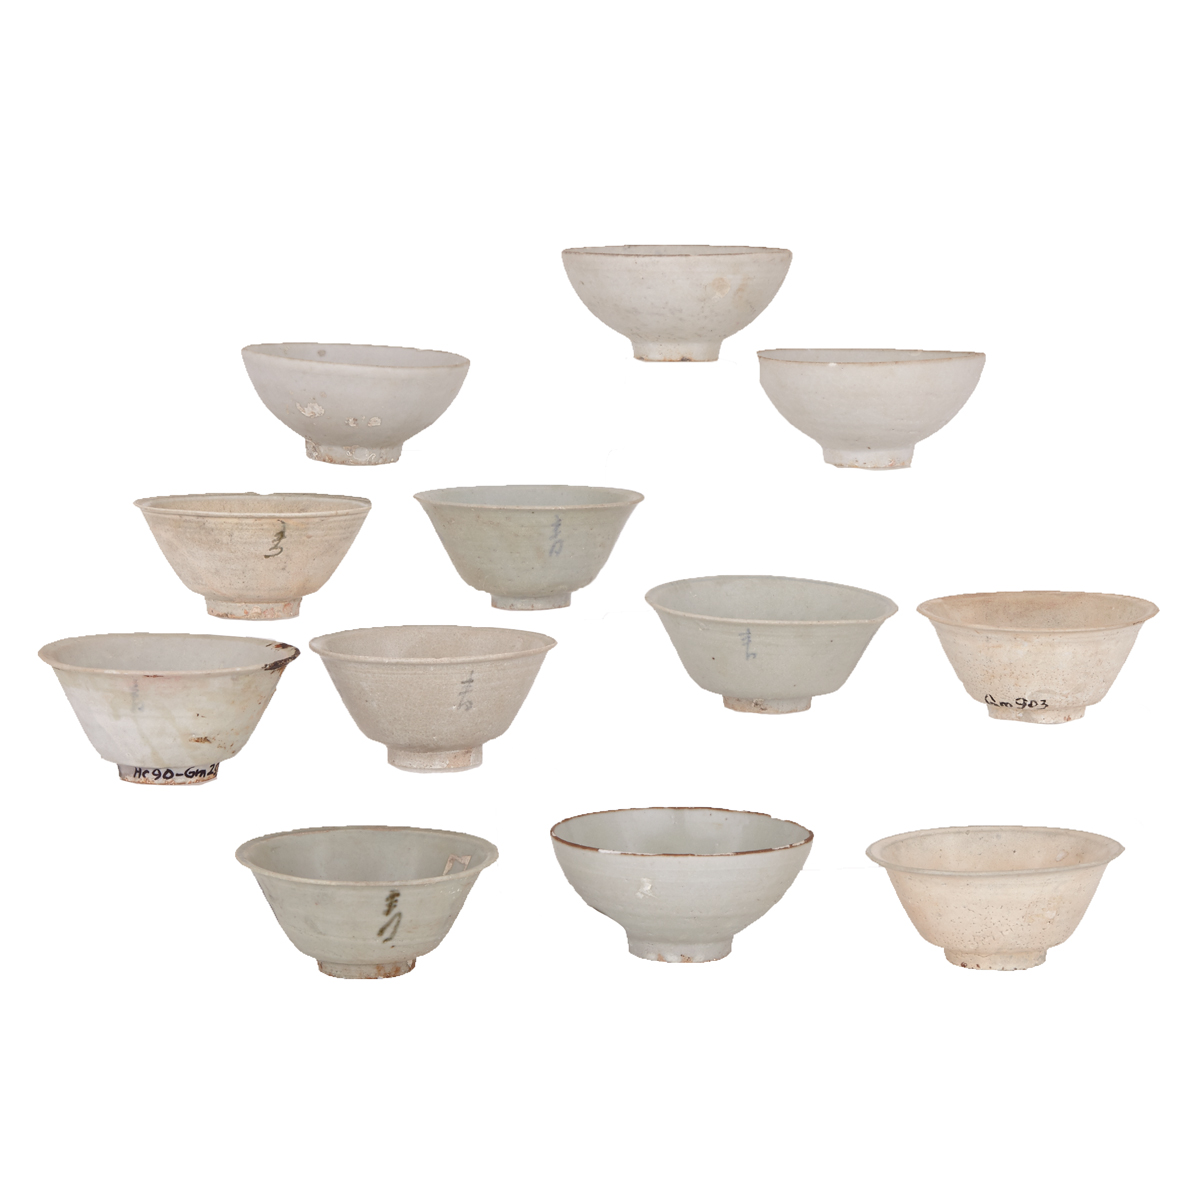 Set of Twelve Vung Tau Cargo Bowls, Circa 1690